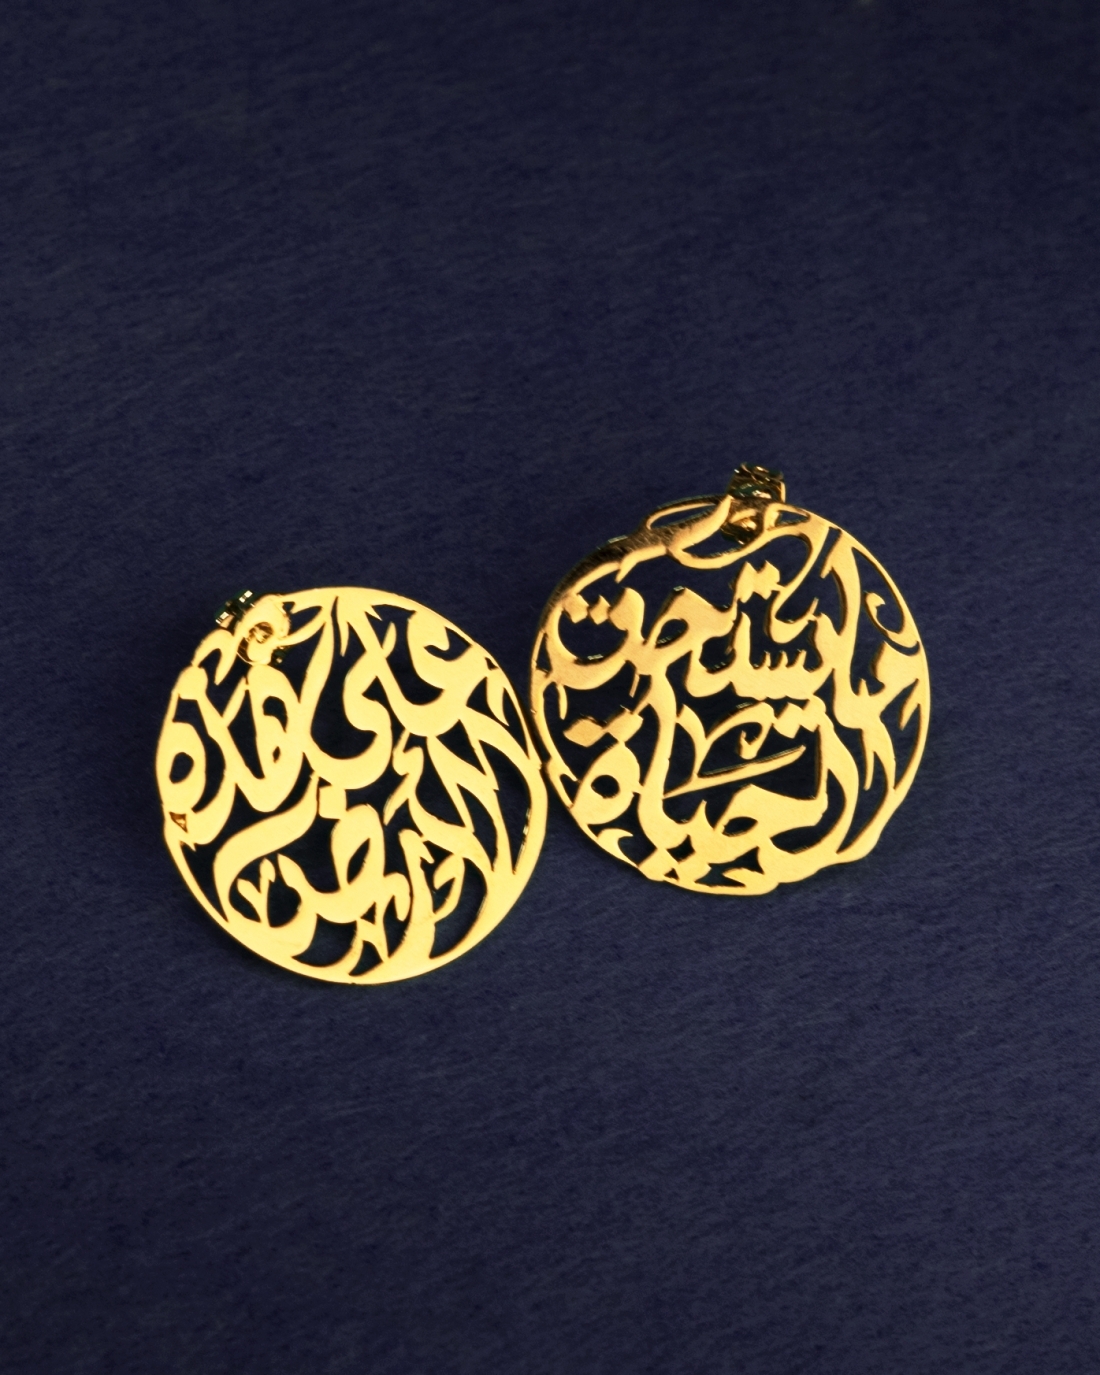 3ala hazihi el 2ard ma yastahiko el haya gold plated earrings 